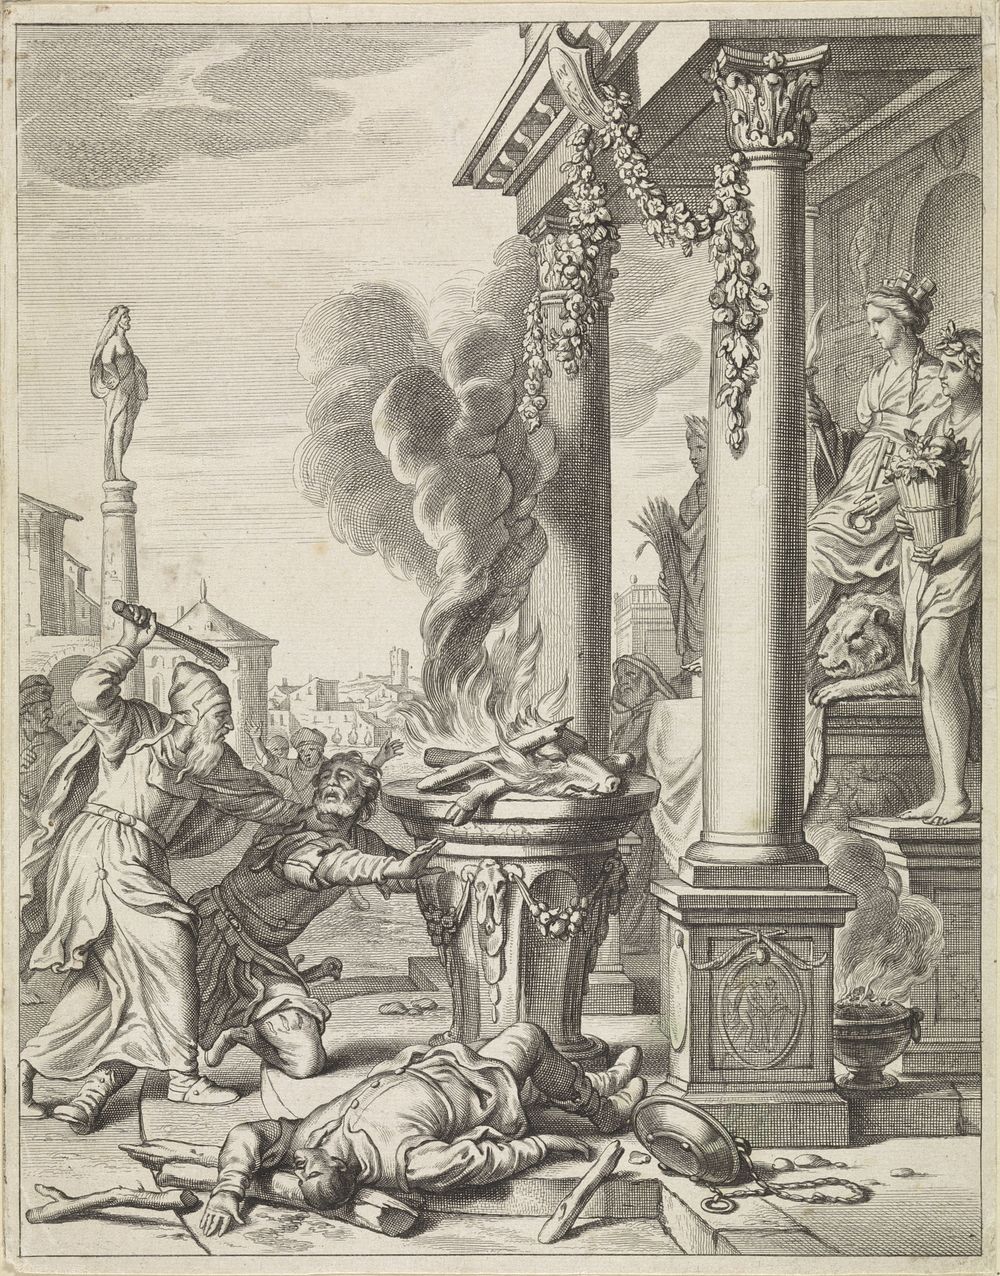 Mattatias (1643 - 1692) by Jan de Visscher and Matthias Scheits